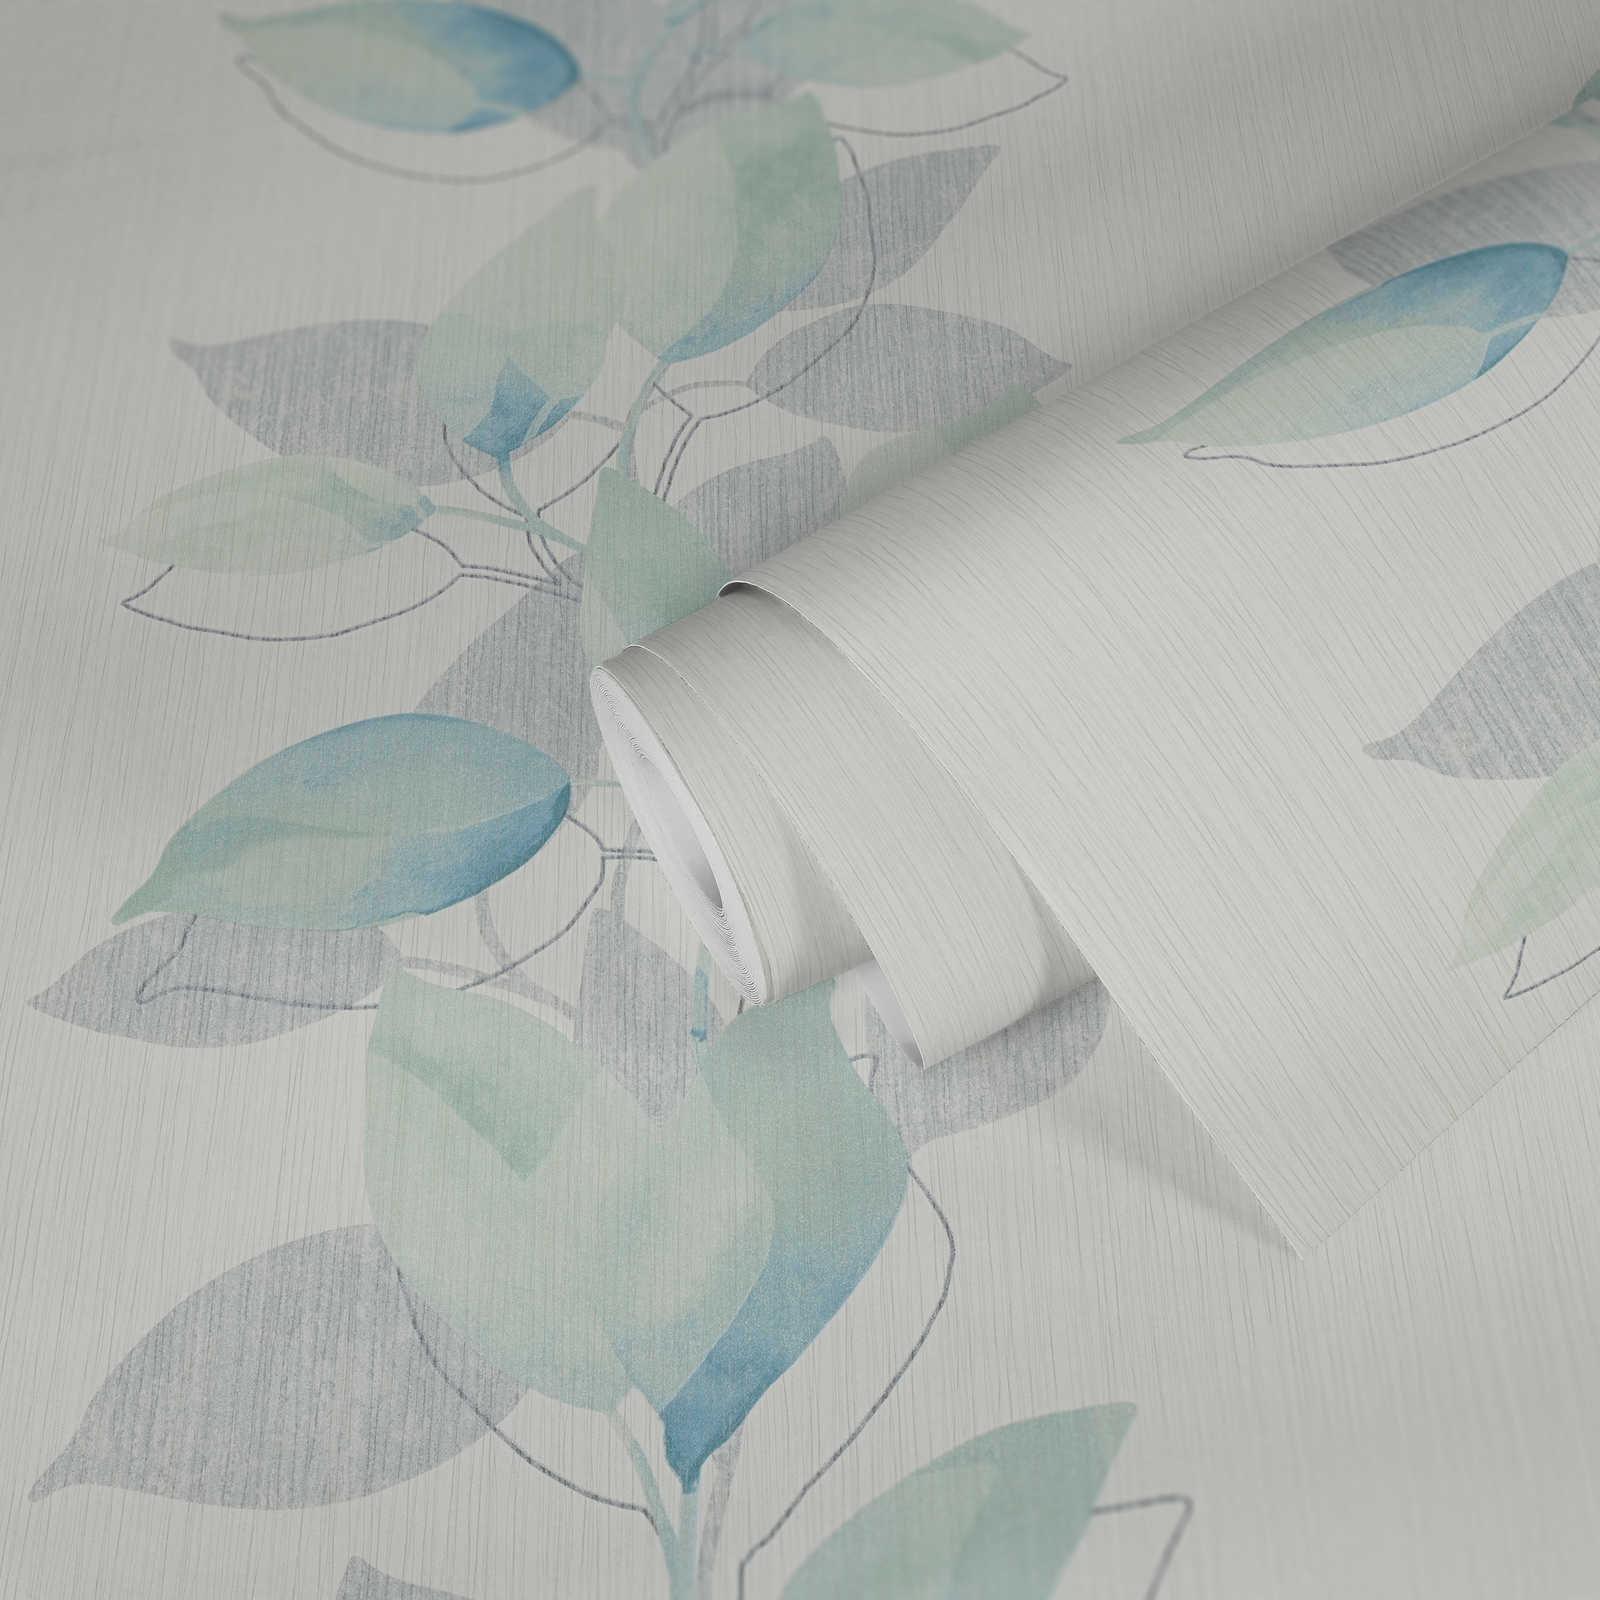             papel pintado no tejido hojas con motivos de acuarela - crema, azul
        